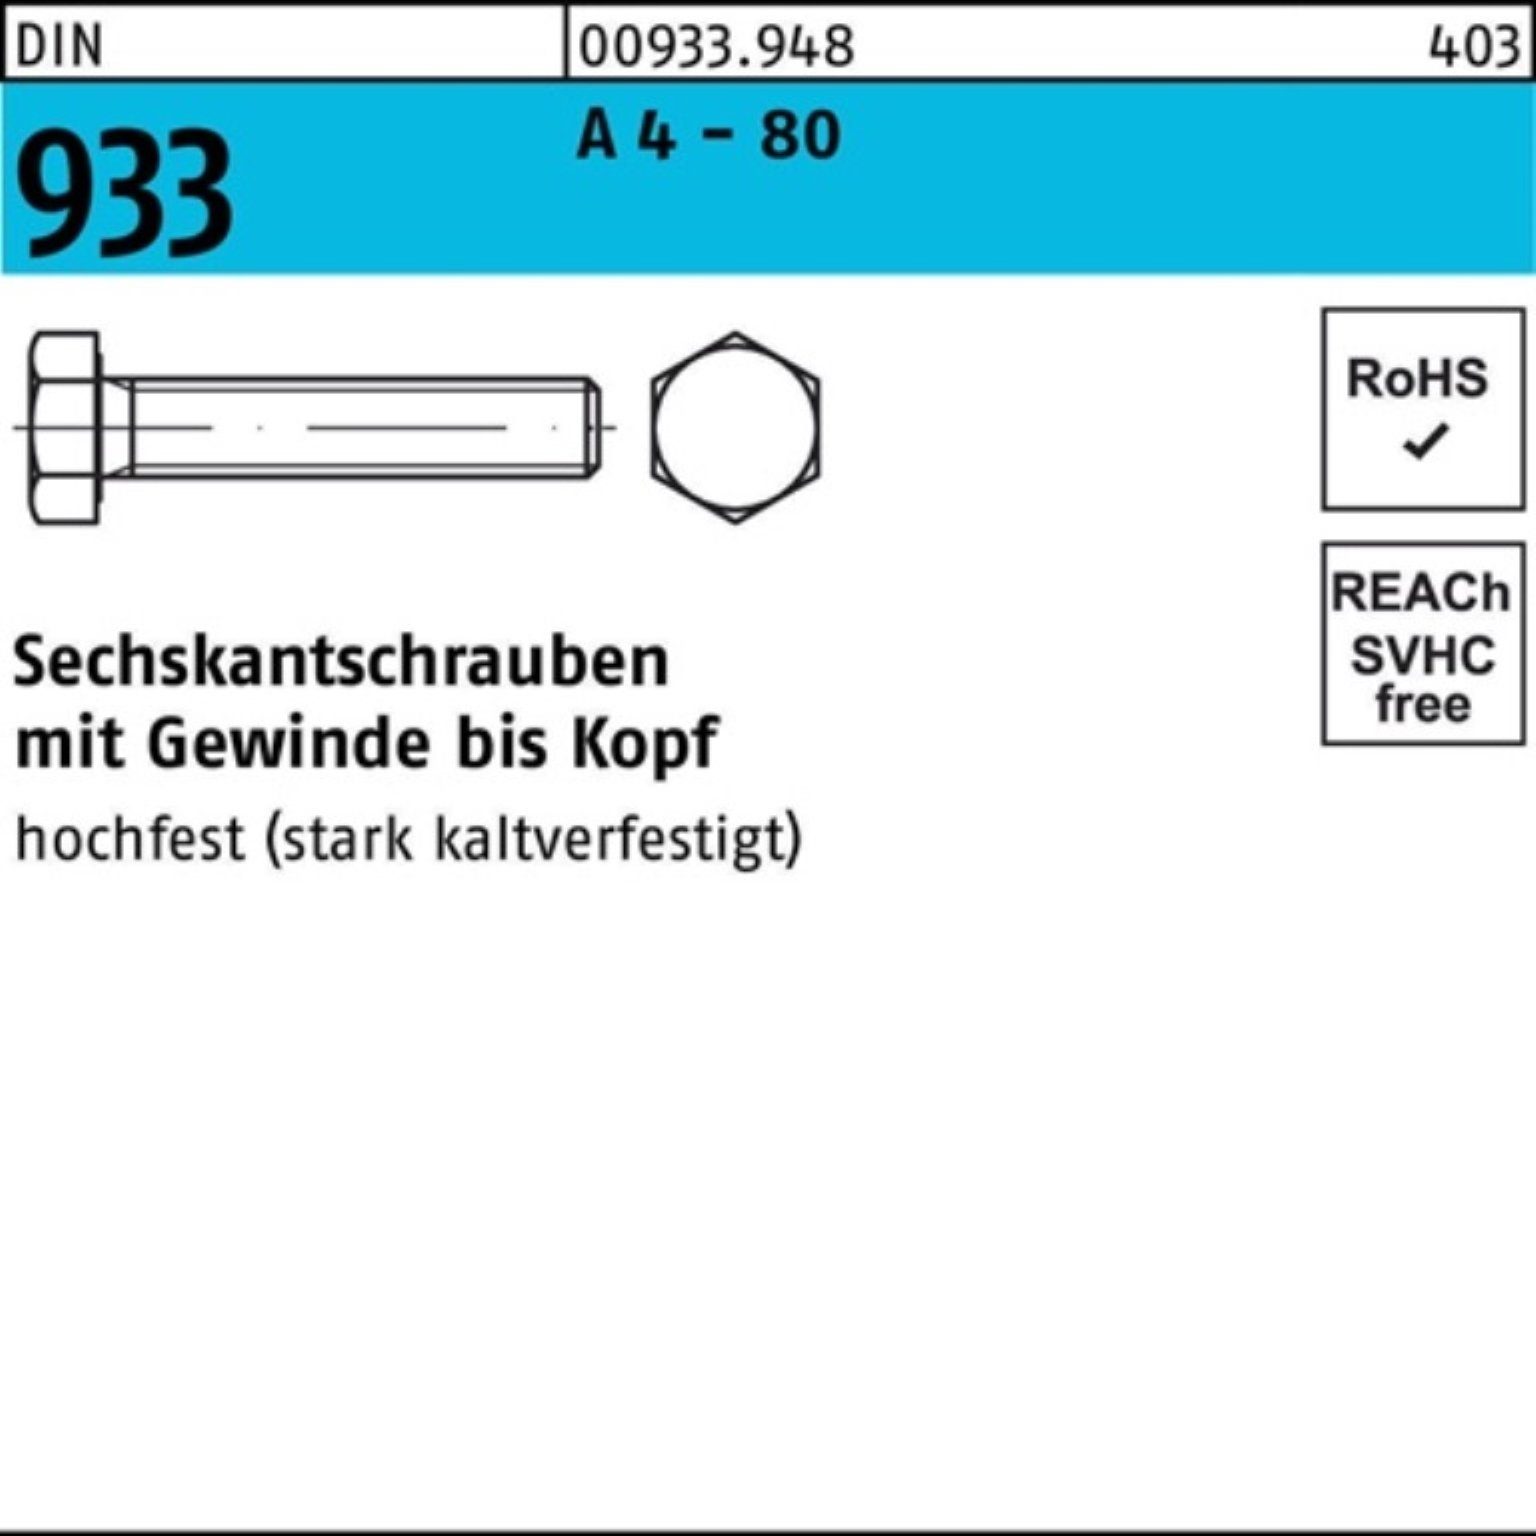 Reyher Sechskantschraube 100er Pack Sechskantschraube DIN 933 VG M10x 55 A 4 - 80 100 Stück DI